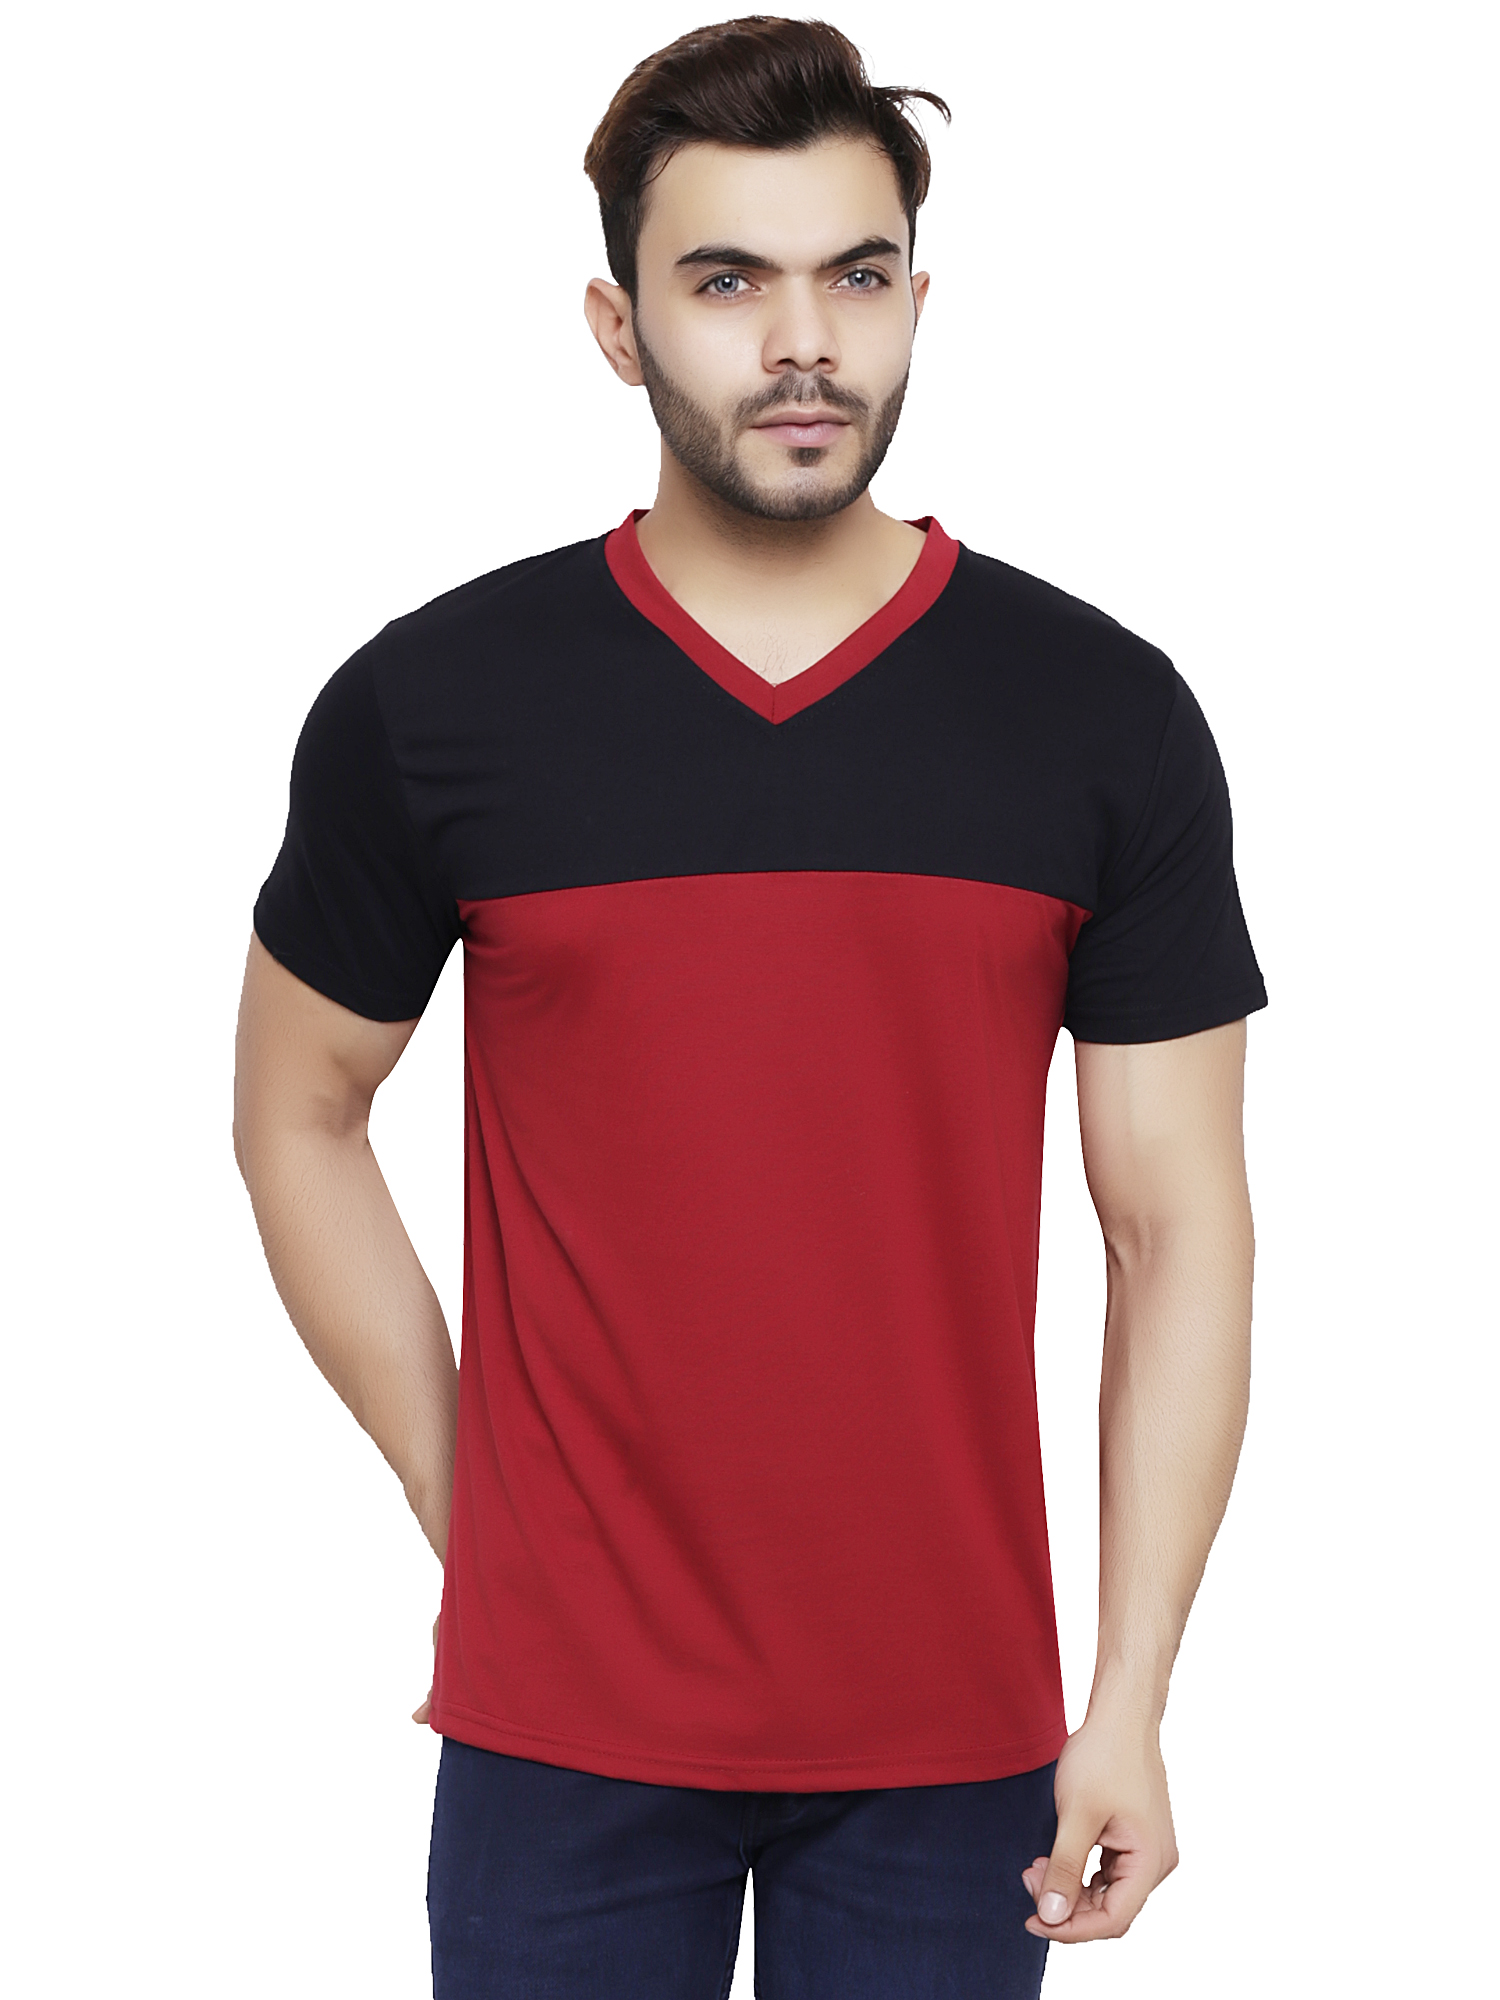 ZETE029 Black Maroon V Neck T Shirt For Men